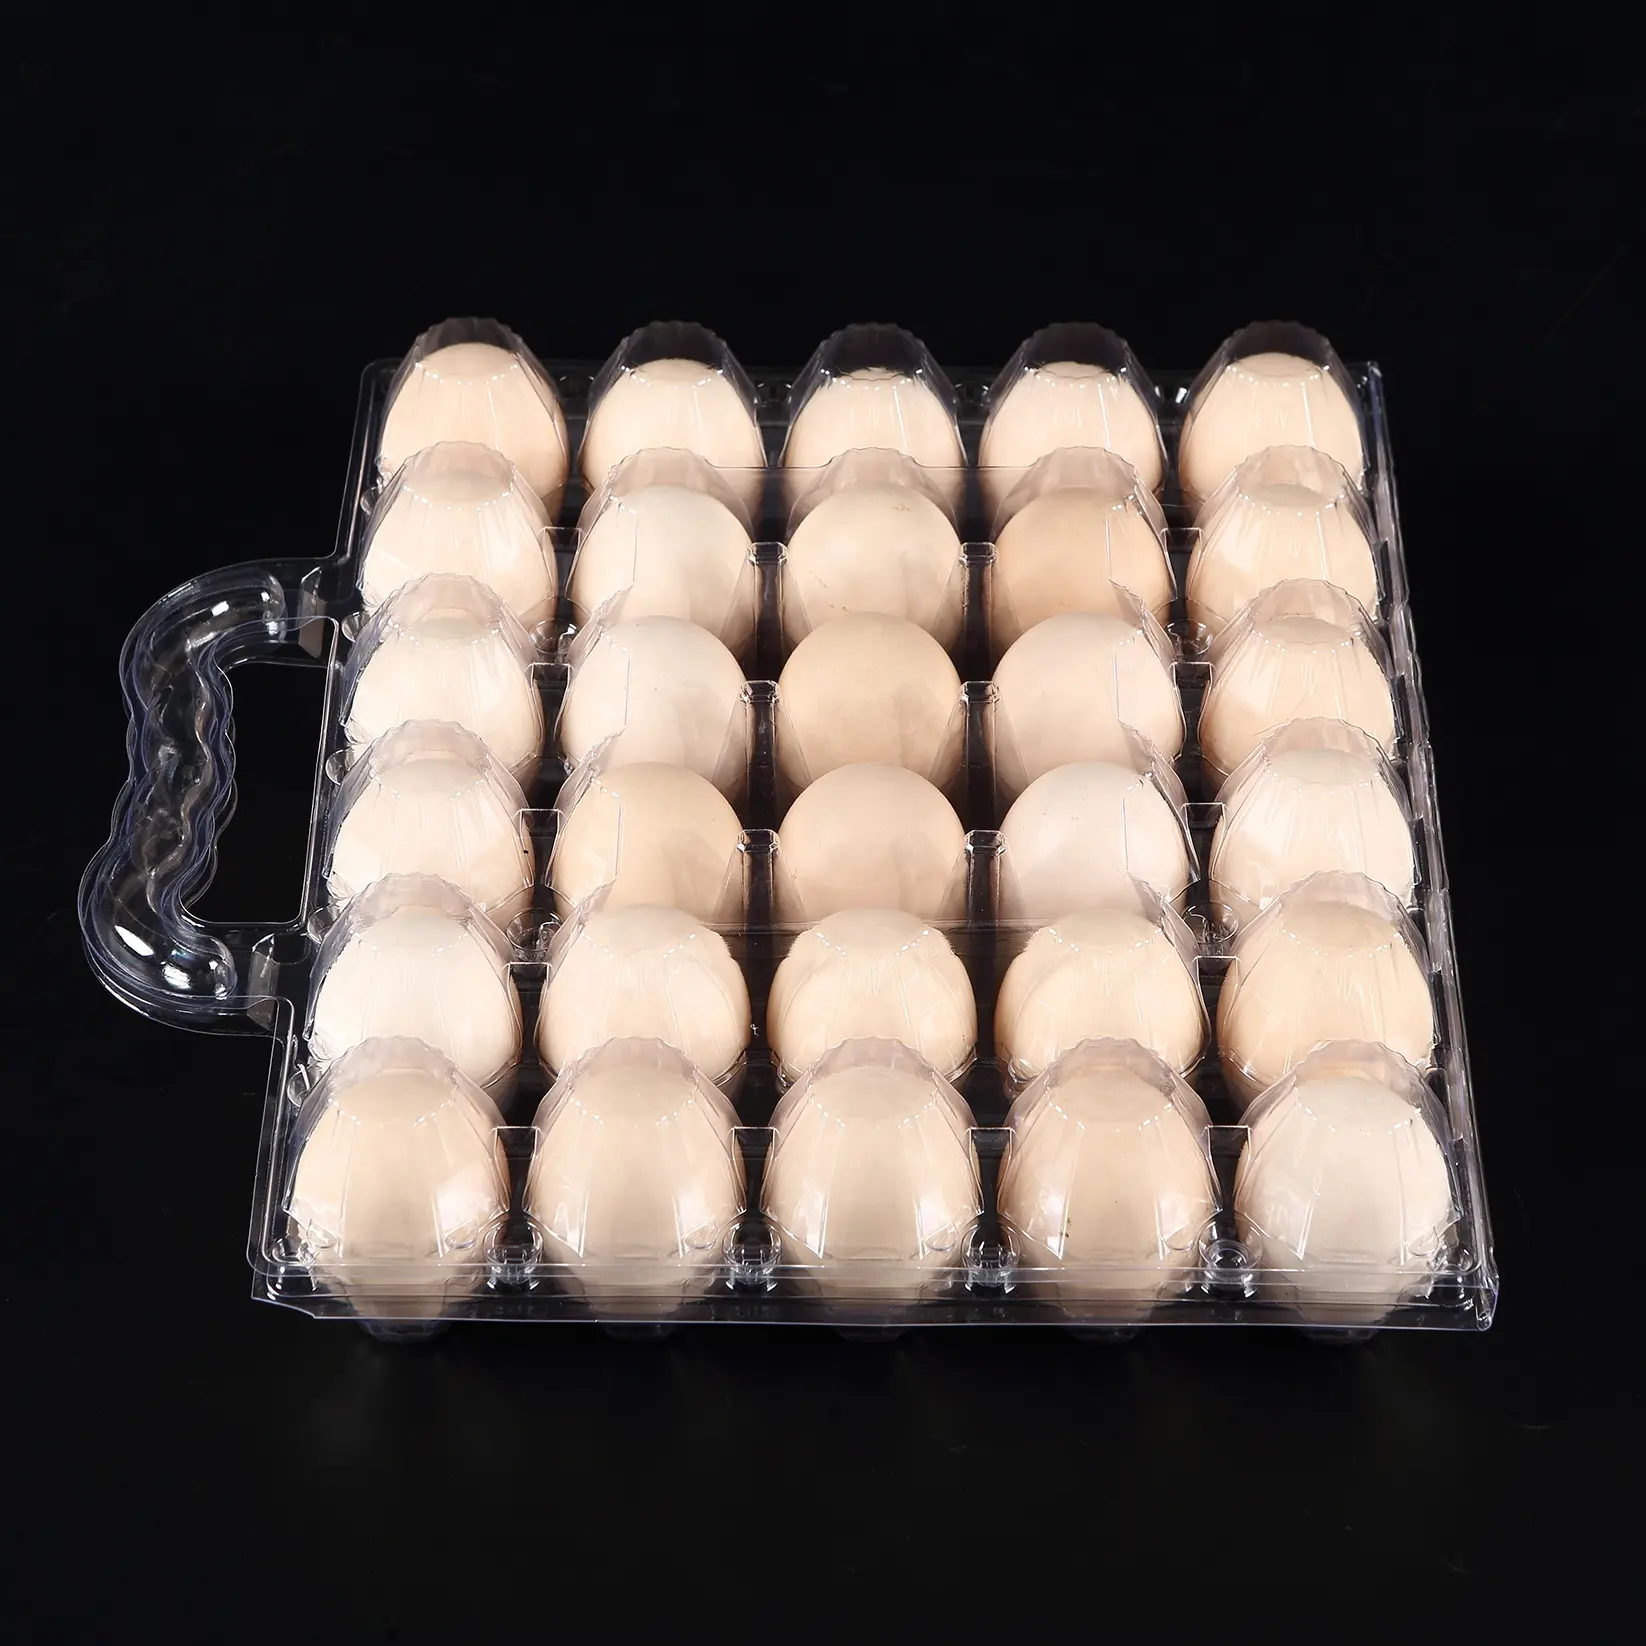 גדול של 30 ביצים קרטון עבור ביצים גדולות עם ידית מיכלים מפלסטיק, חללים לספור oem ו-odm